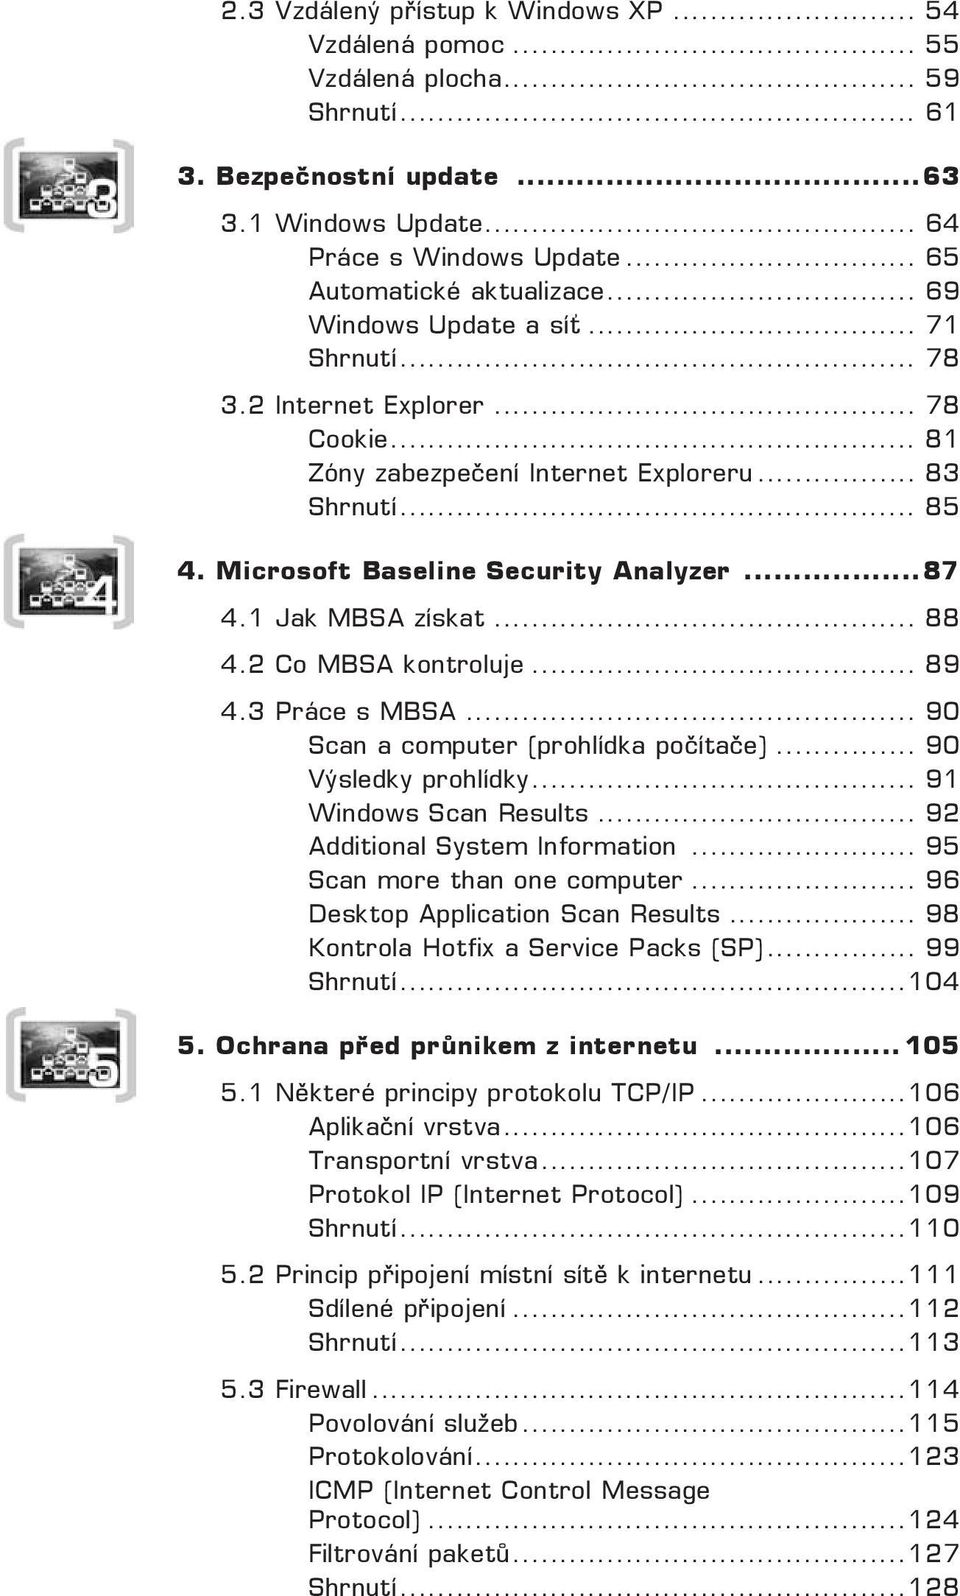 Microsoft Baseline Security Analyzer... 87 4.1 Jak MBSA získat... 88 4.2 Co MBSA kontroluje... 89 4.3 Práce s MBSA... 90 Scan a computer (prohlídka počítače)... 90 Výsledky prohlídky.